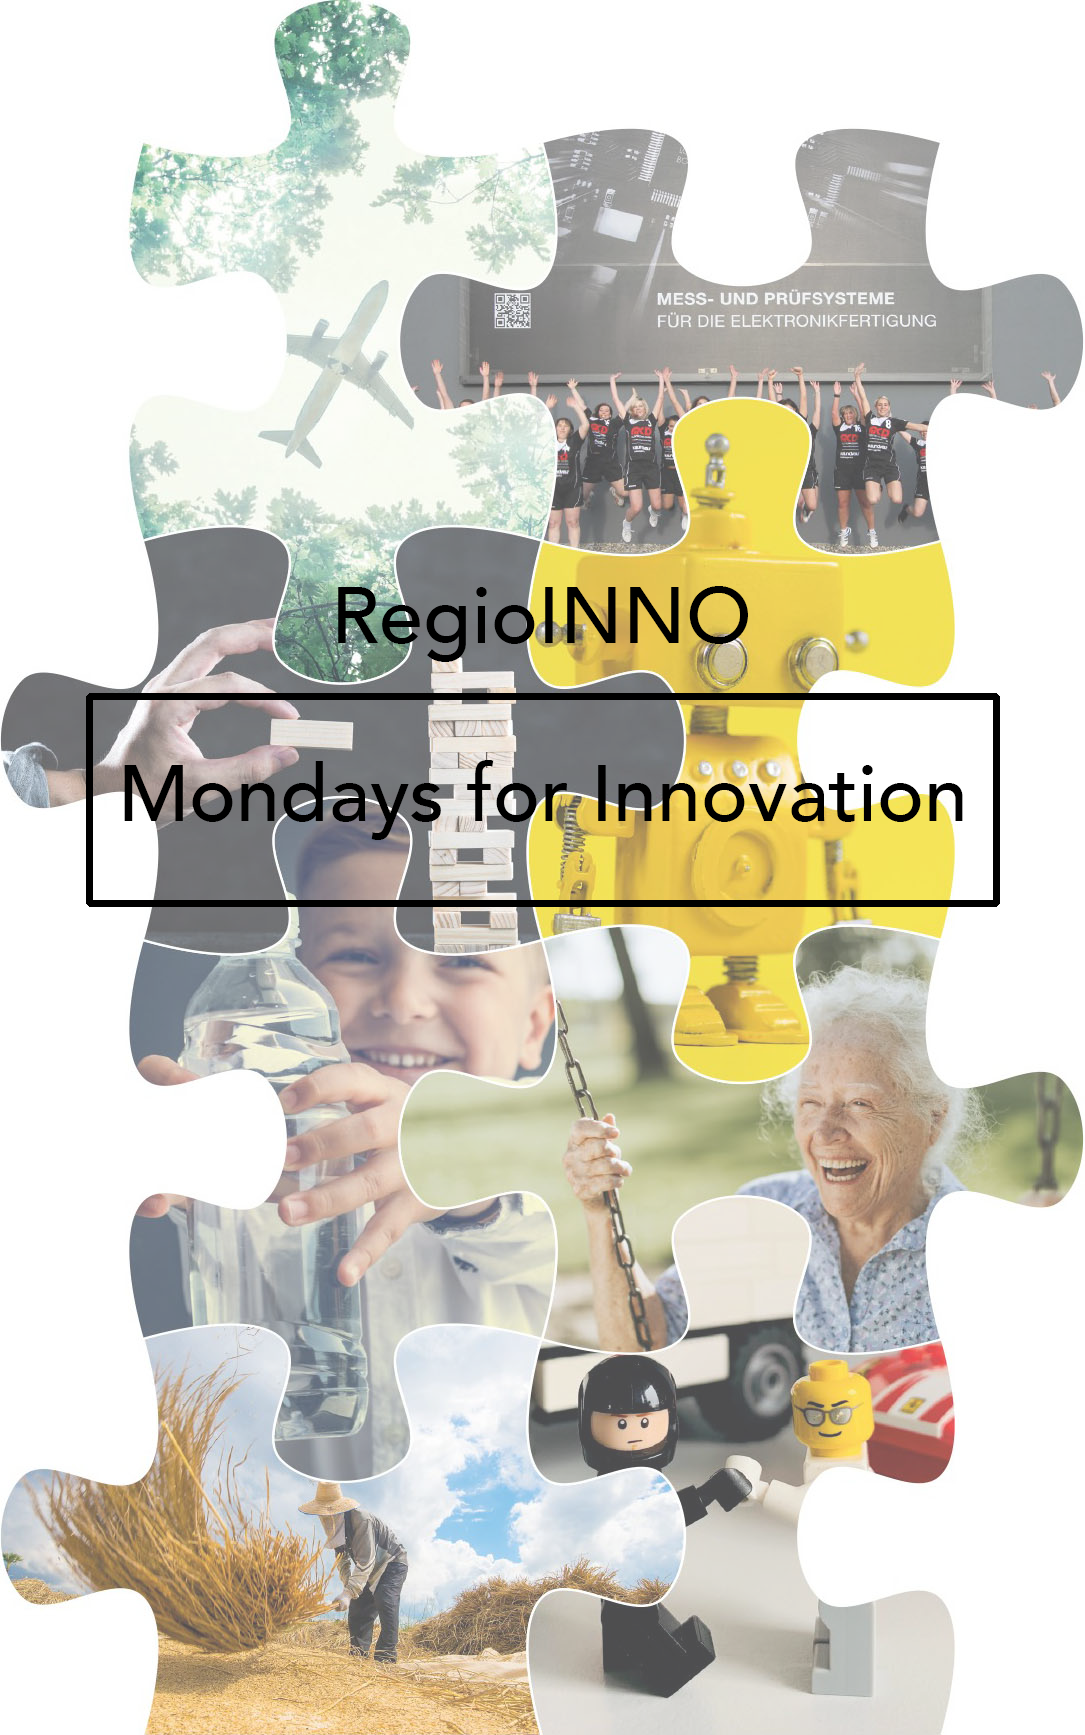 RegioINNO Nordschwarzwald Mondays for Innovation mit einem Puzzle aus Bildern der Mondays for Innovation im Hintergrund